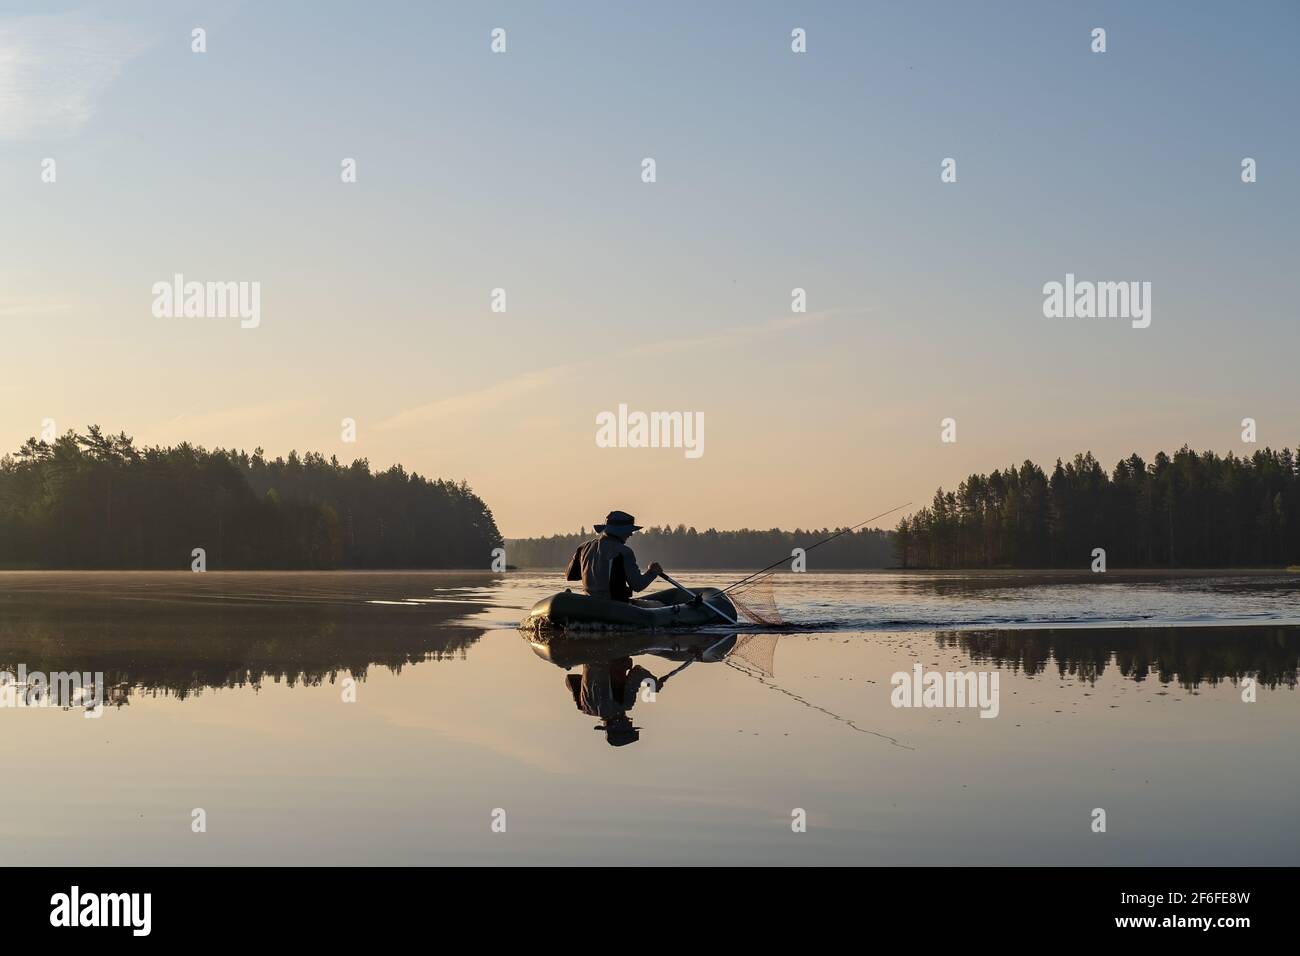 Pescatore in una barca gonfiabile che si candida su un tranquillo lago forestale, all'alba, sullo sfondo di cielo e alberi. Bellissimo paesaggio. Foto Stock